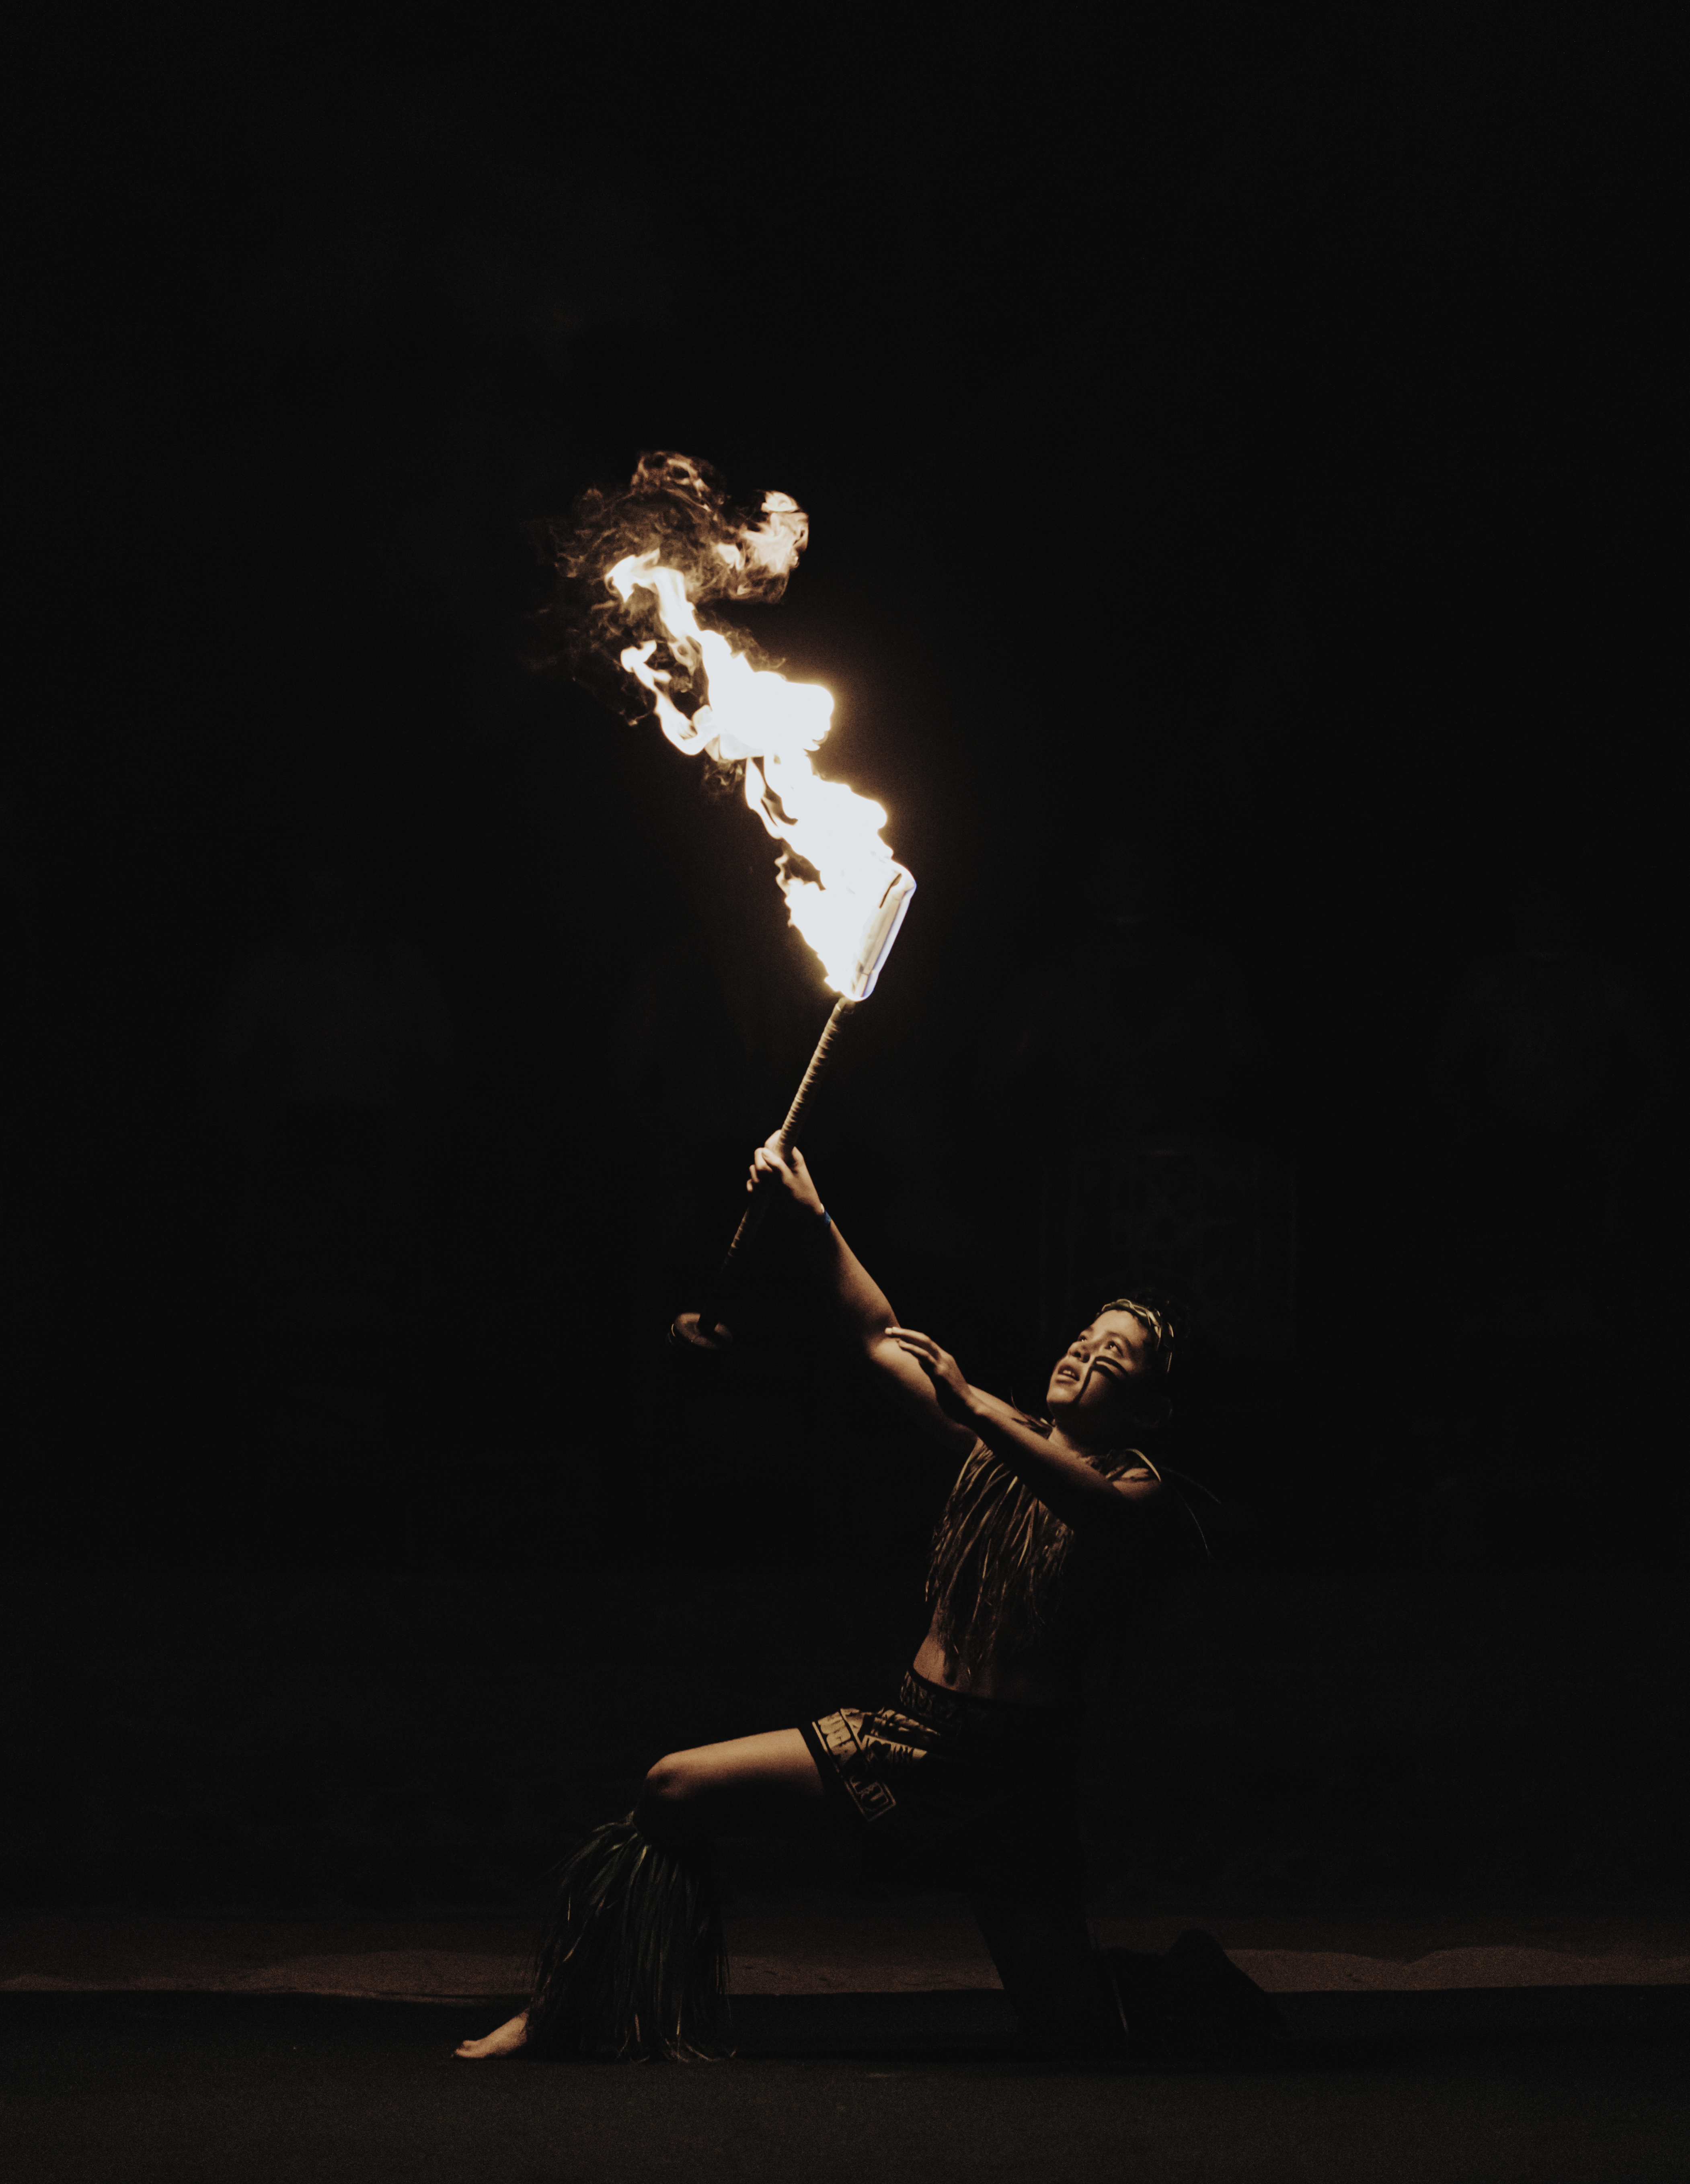 Firedance by Joe Milford